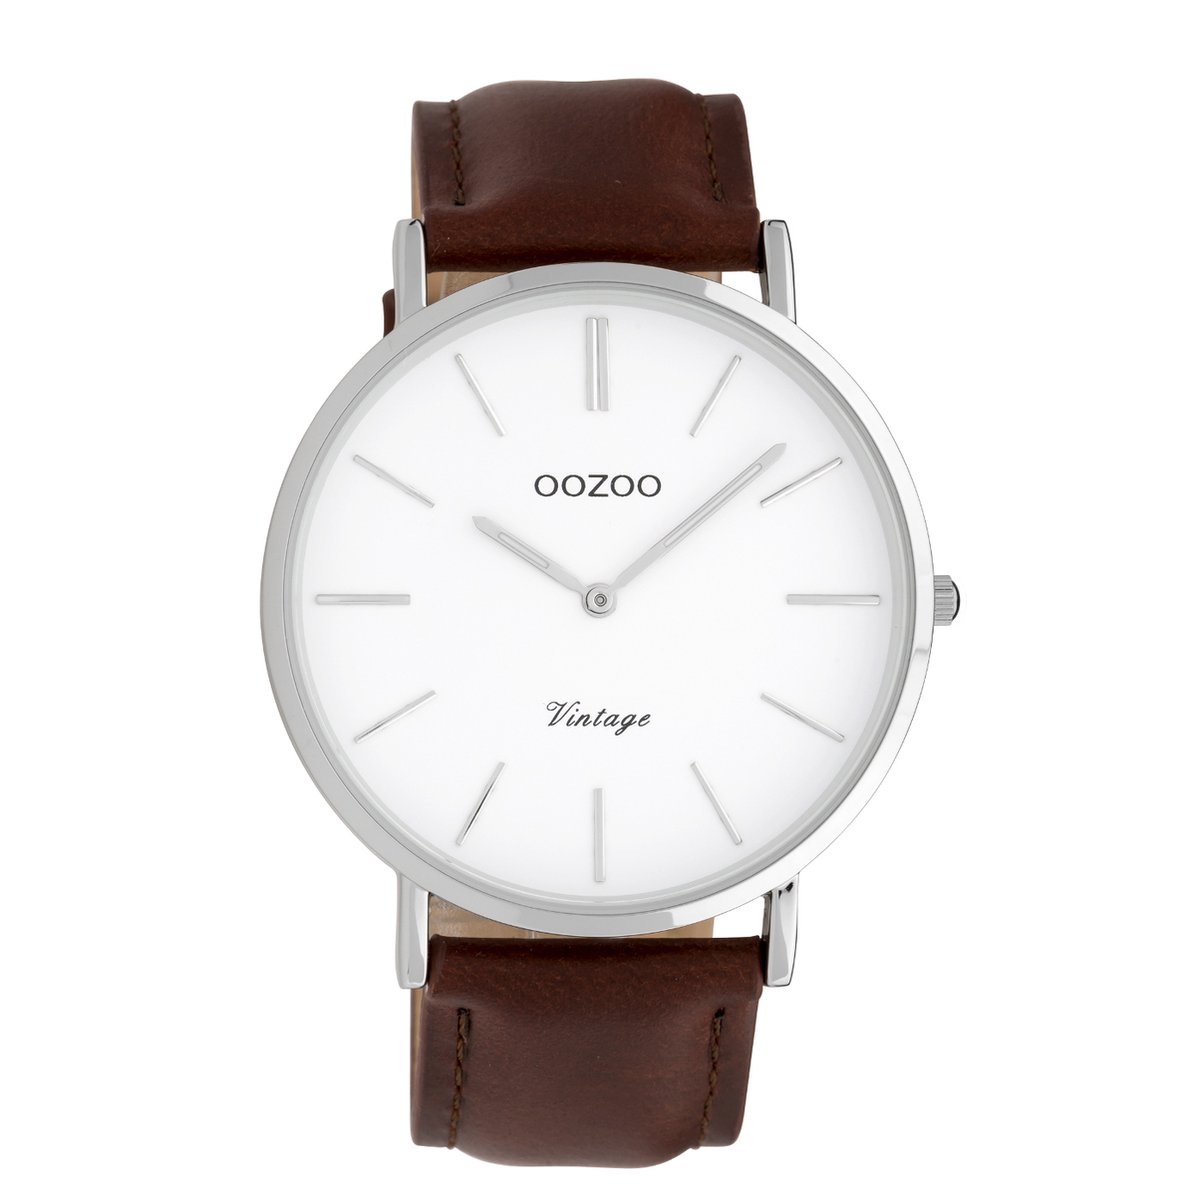 OOZOO Vintage Bruin/Wit horloge (40 mm) - Bruin